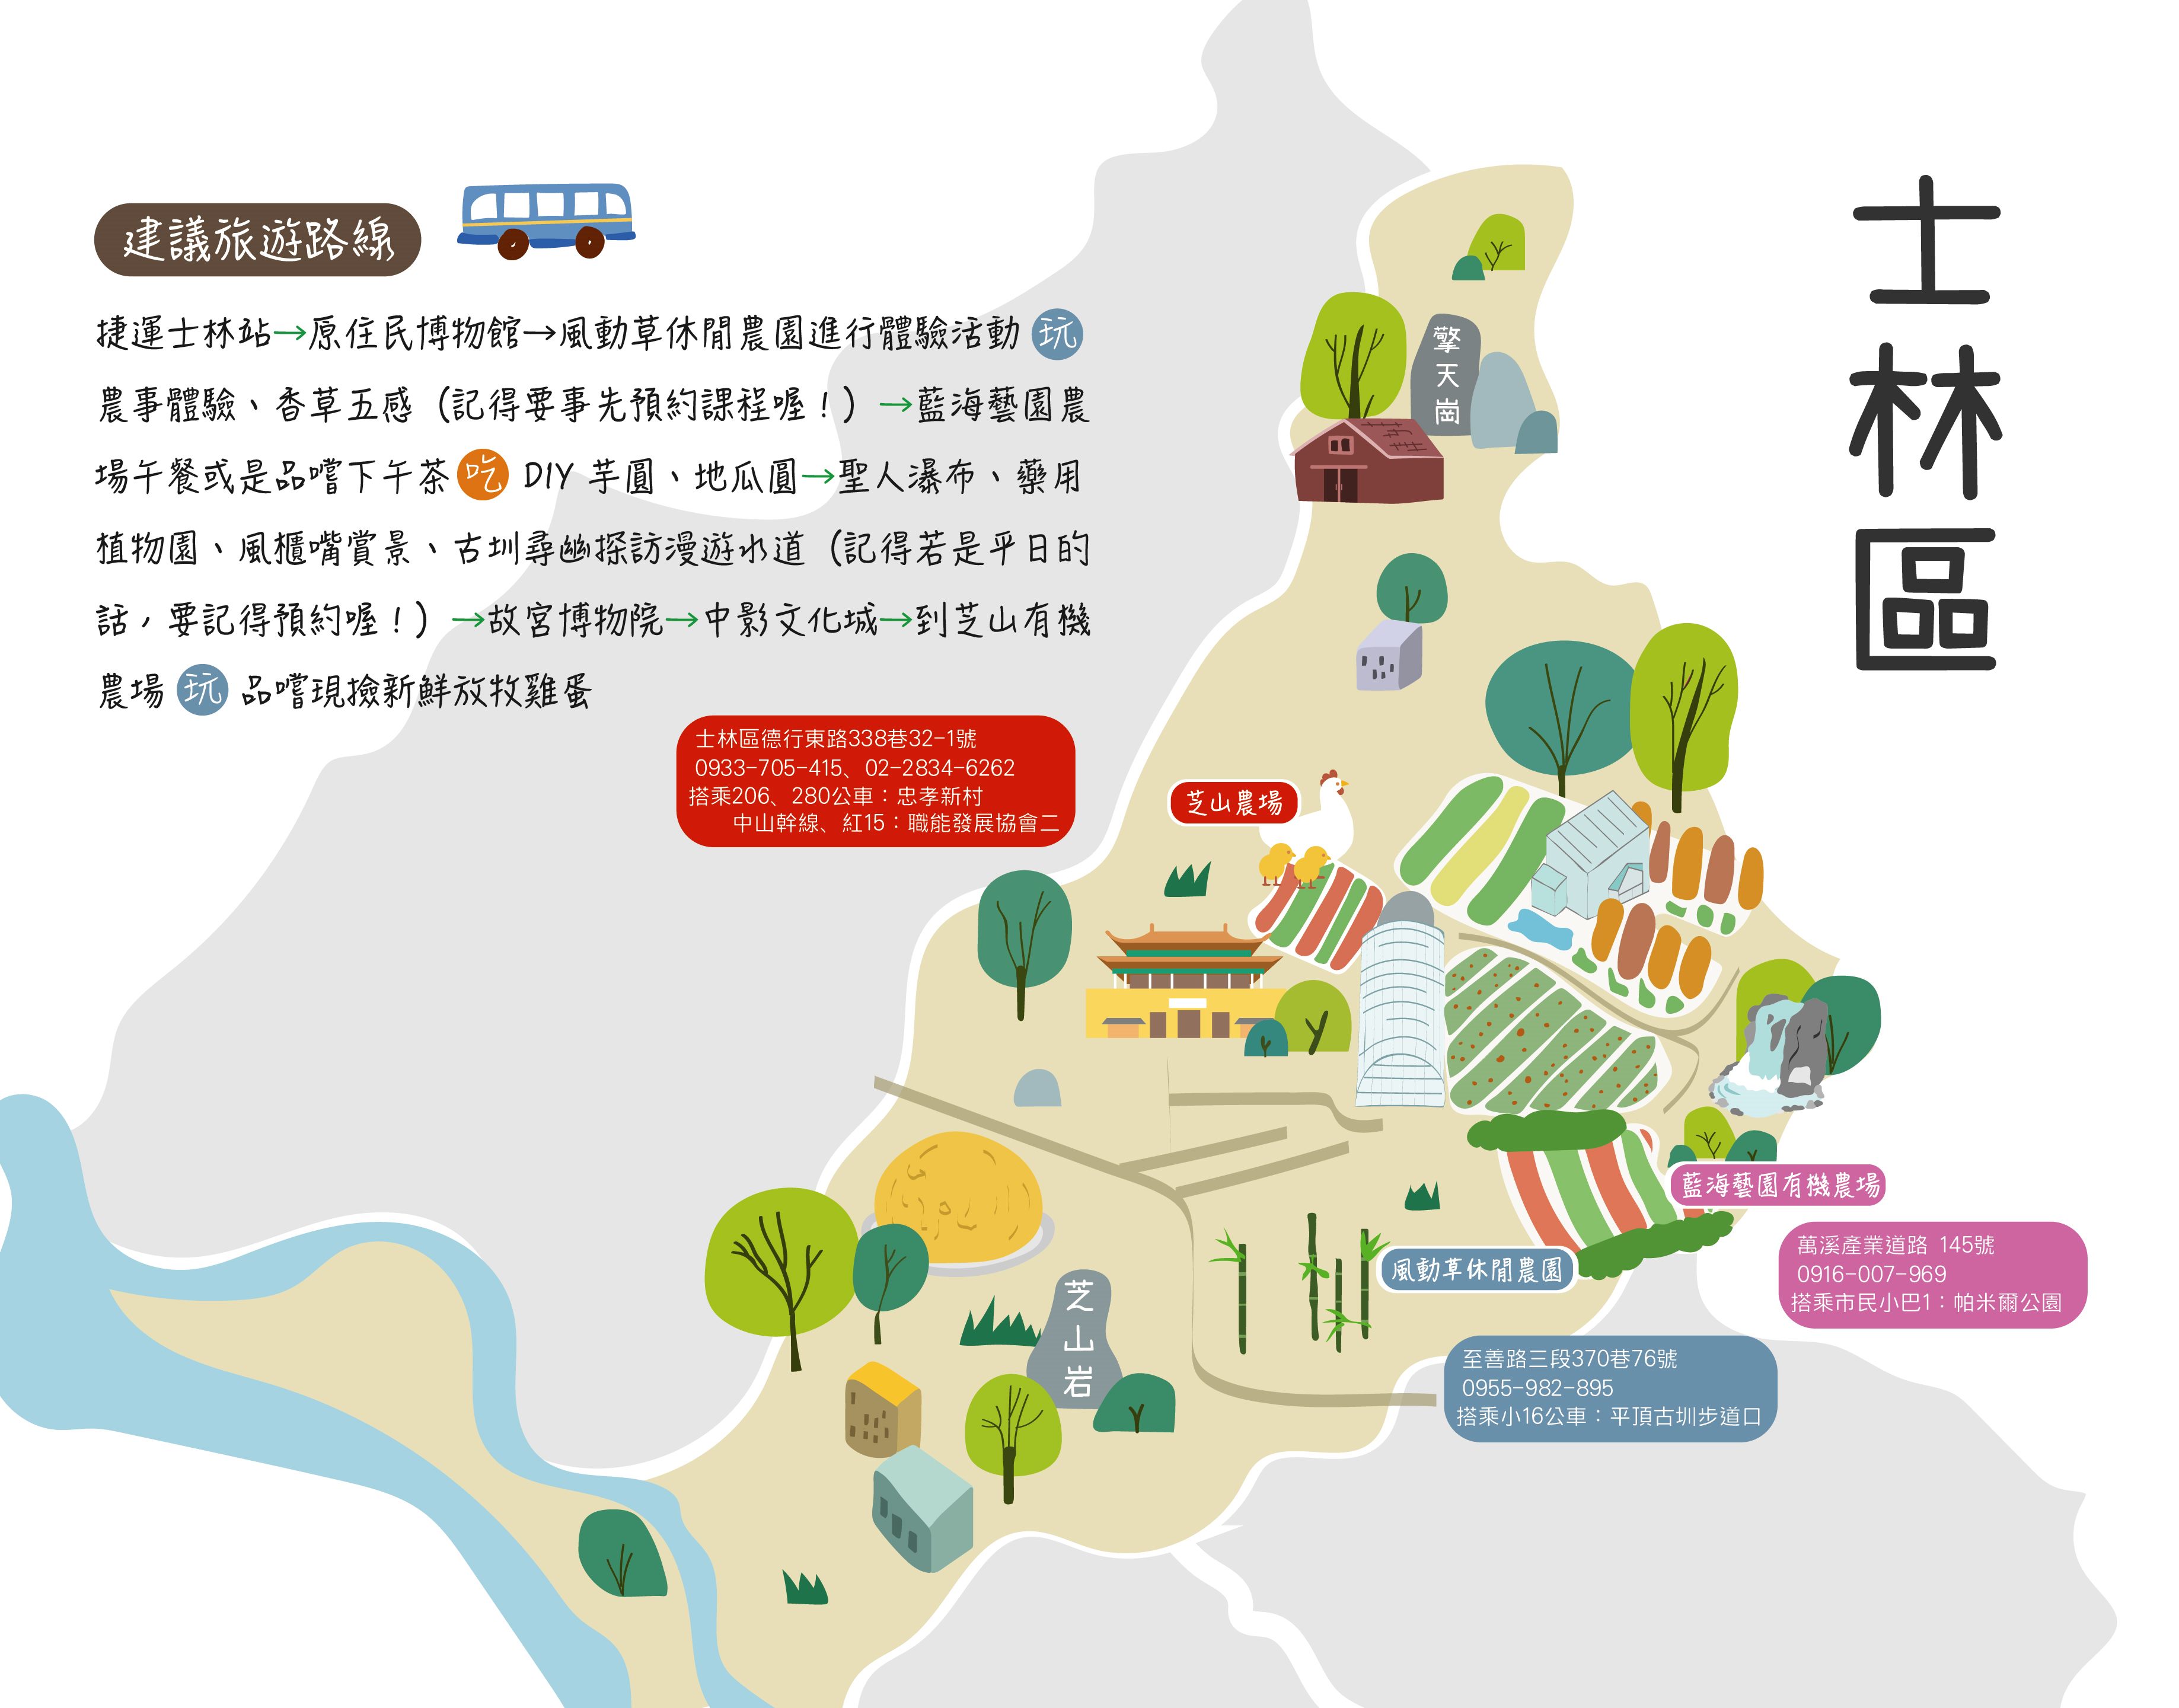 臺北市農業主題網 一日遊程建議路線